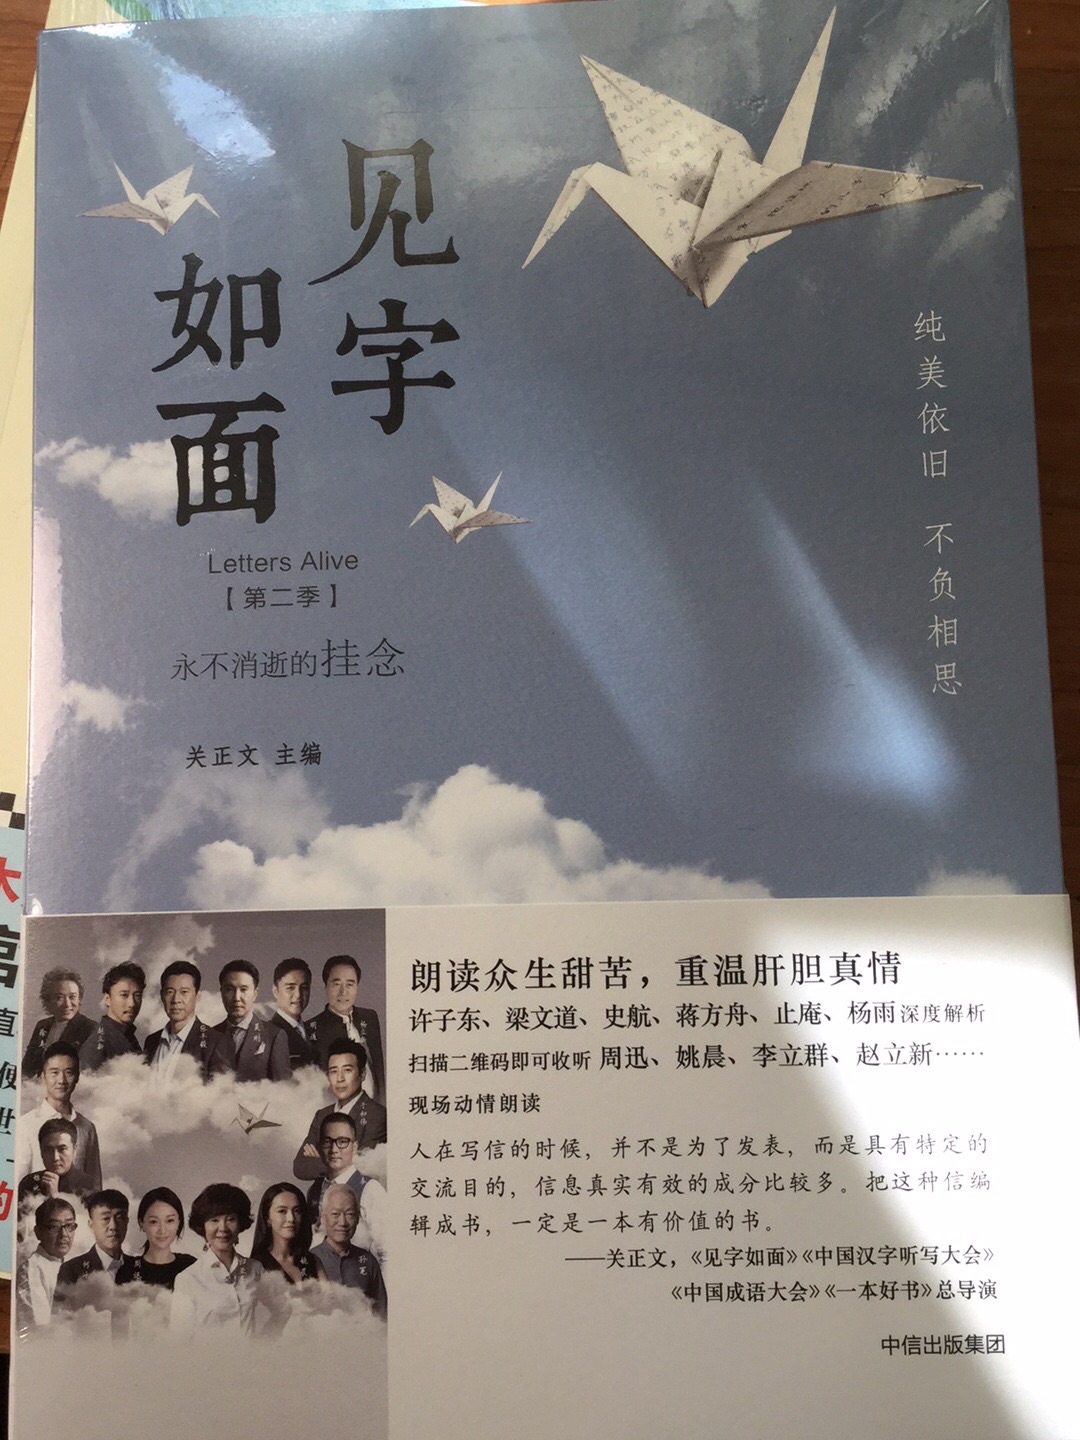 因为喜欢这个节目才买的书，感觉是中国最有意义的几大节目之一